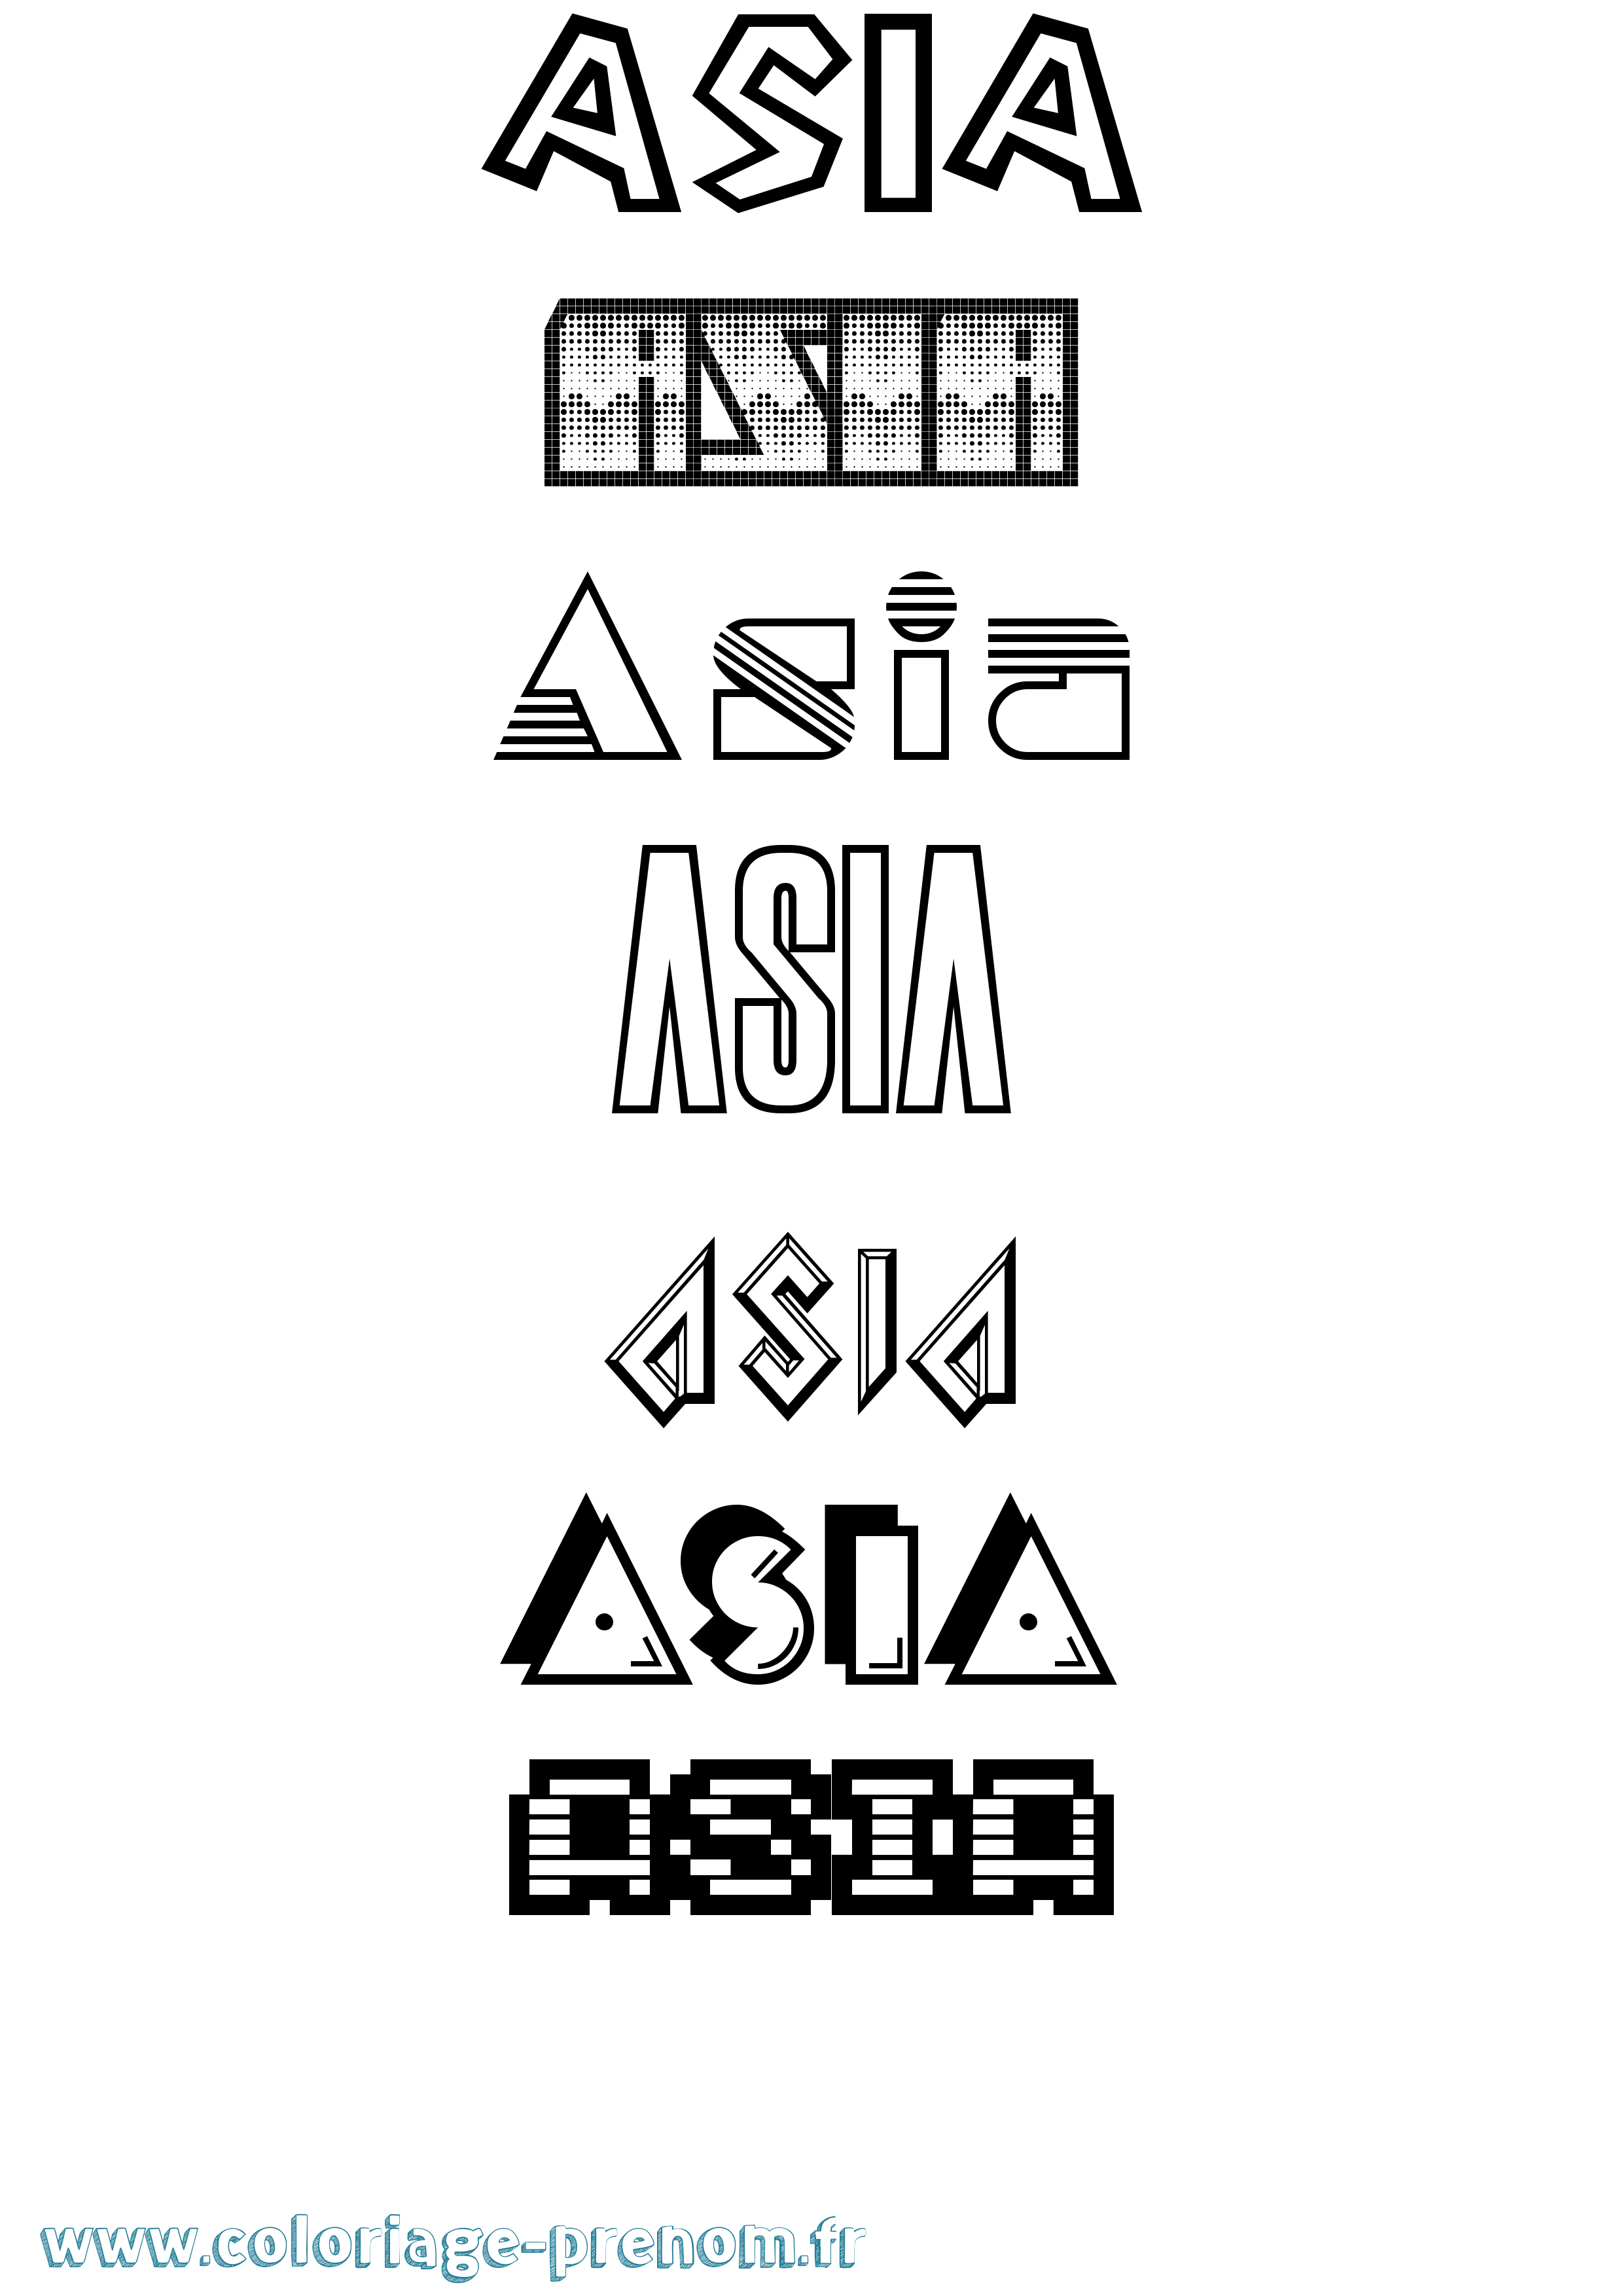 Coloriage prénom Asia